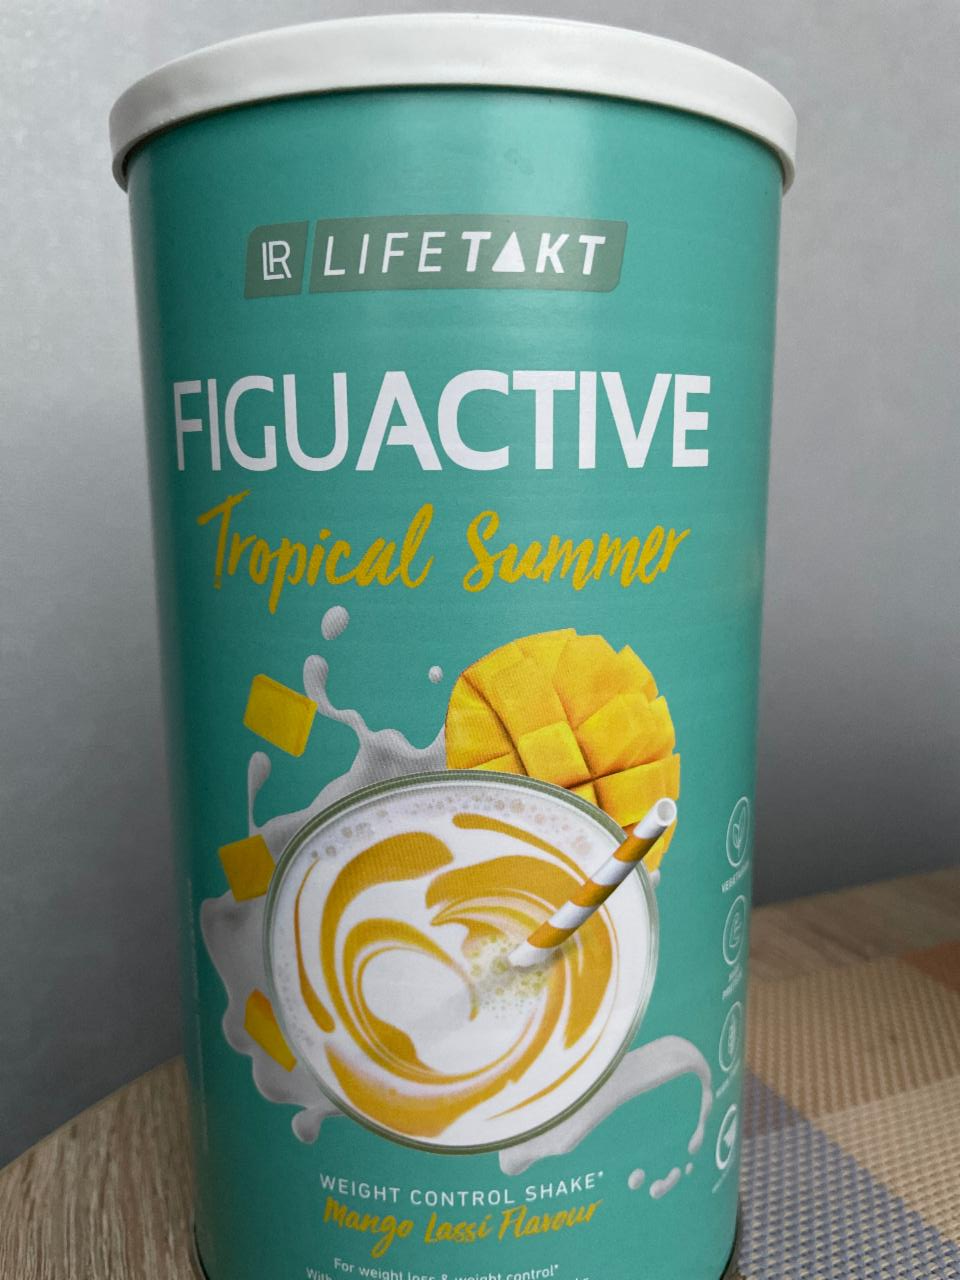 Фото - коктейль для контроля веса тропическое лето FIGUACTIVE LR Lifetakt